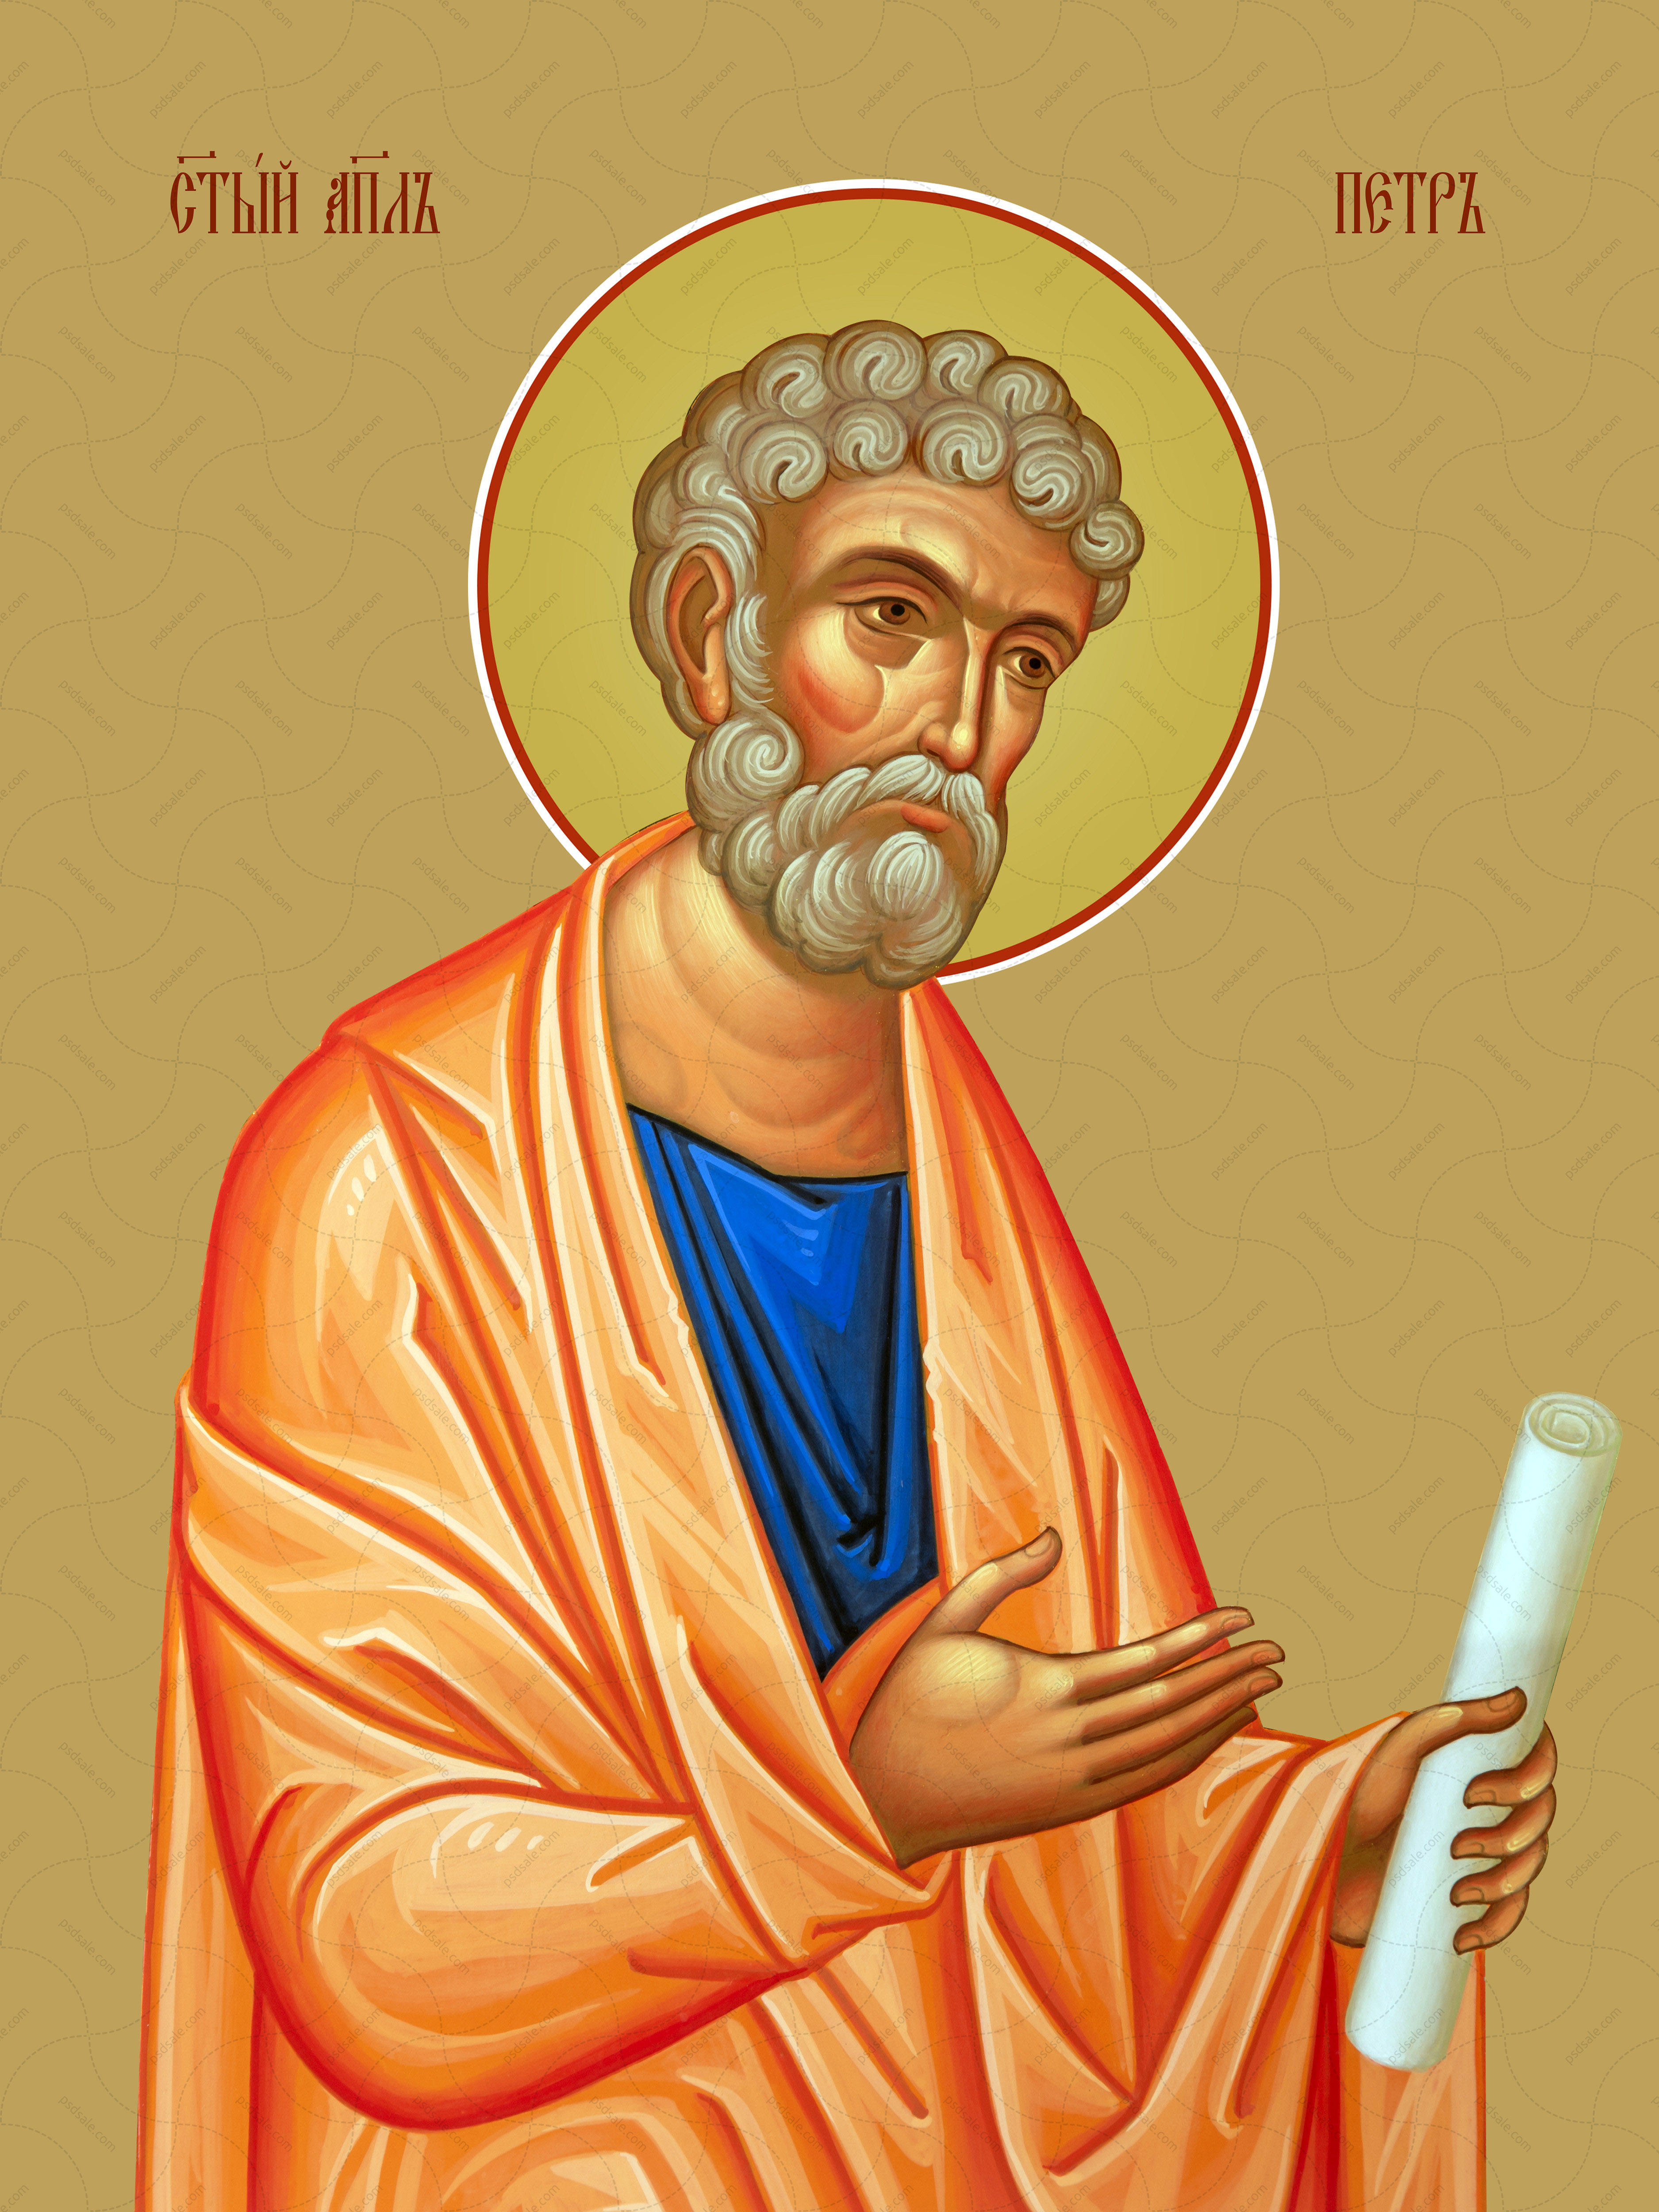 Петро, святий апостол